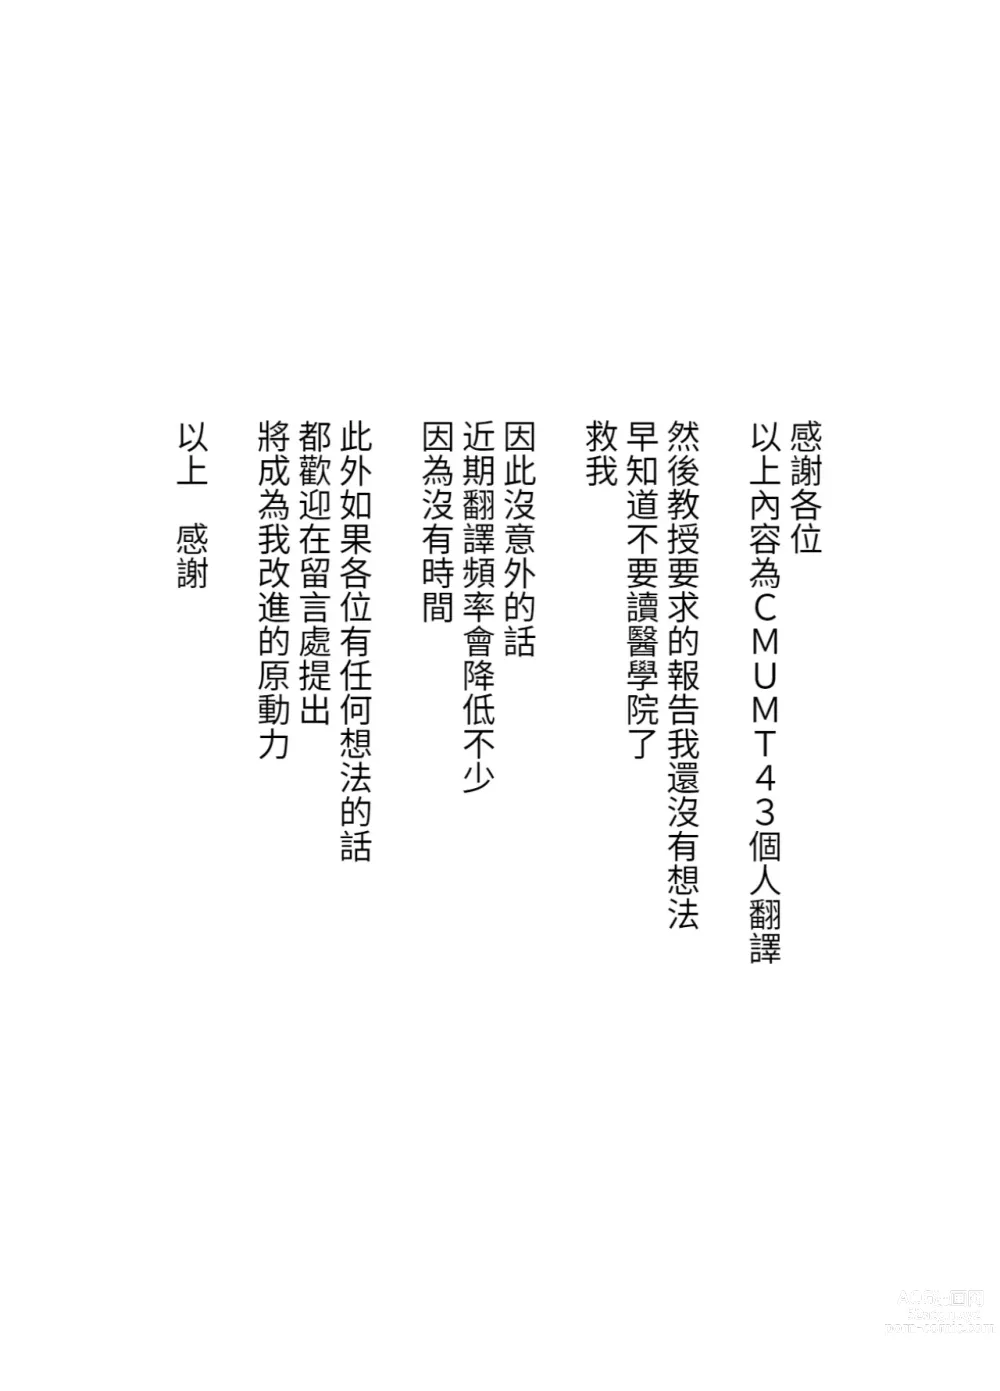 Page 57 of doujinshi Dosakusa ni Magirete Oshi ni Yowai Ane to Ofuro ni Haitta Kekka